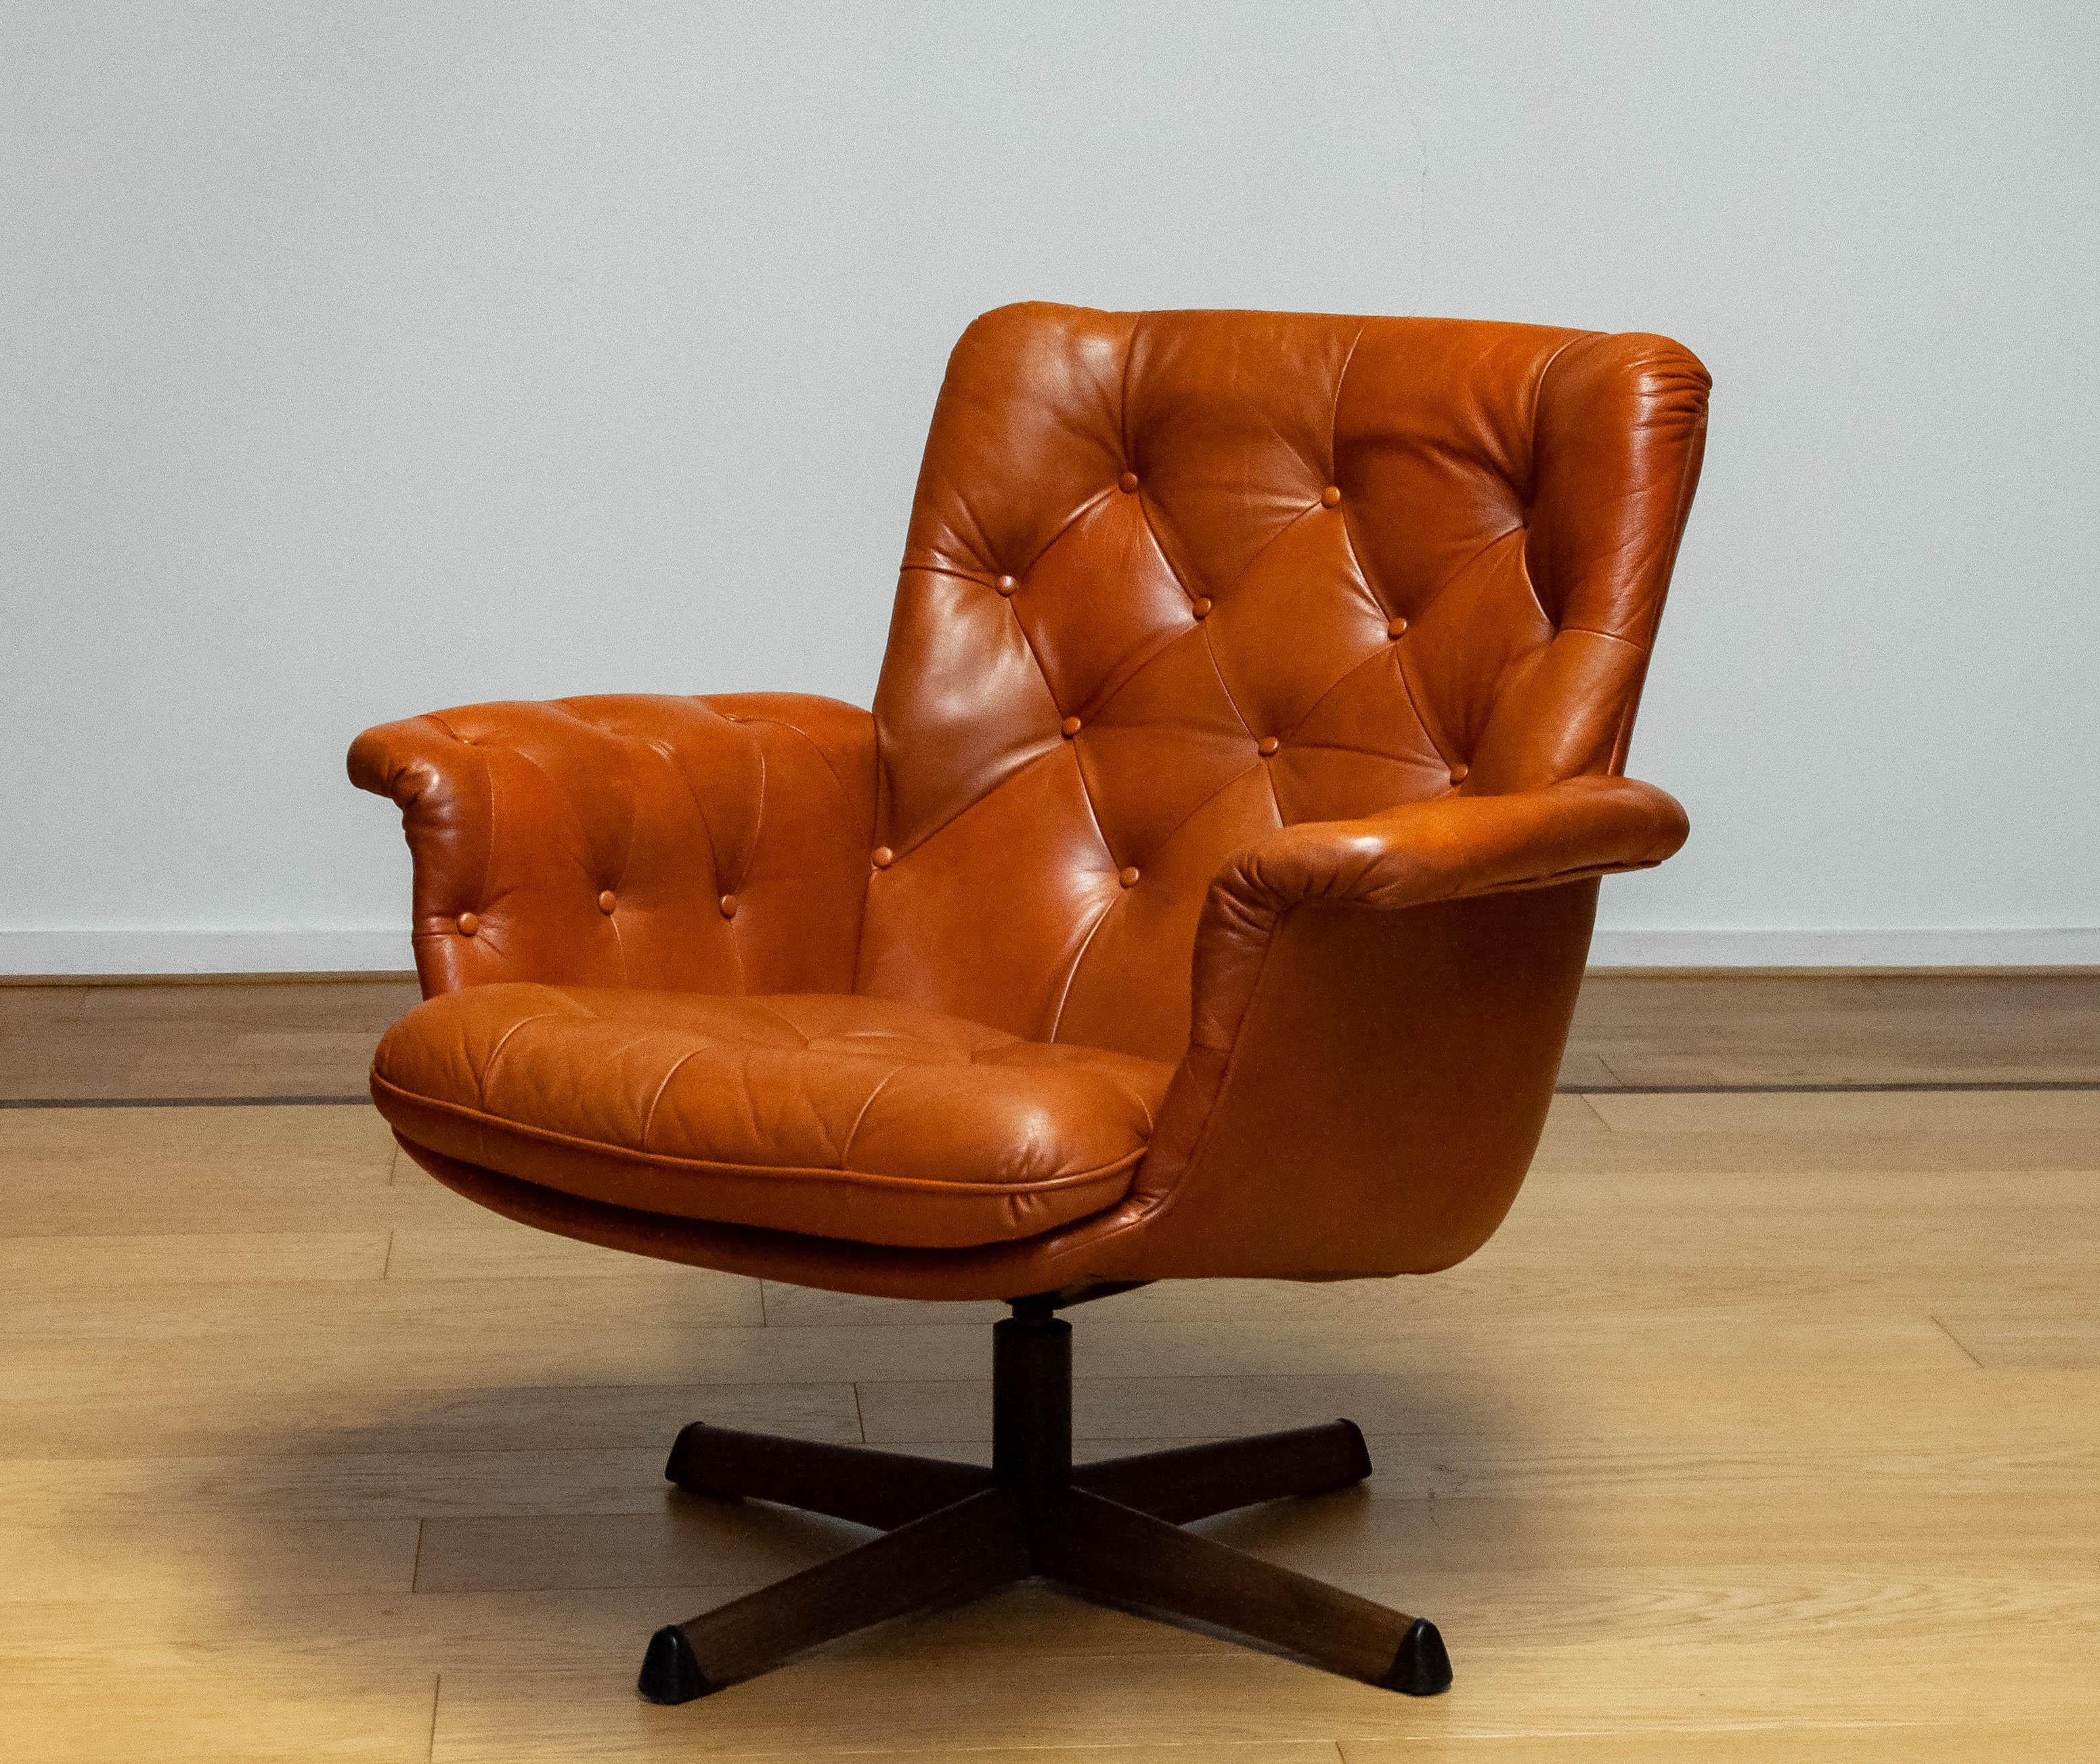 Ein schöner Drehstuhl von Göte Möbler Nässjö Schweden, 1960er Jahre.
Dieser Stuhl ist mit getuftetem cognacfarbenem Leder gepolstert und steht auf einem drehbaren Metallgestell mit Holzdruck.
Der Stuhl ist sehr bequem und sieht sowohl in klassischen